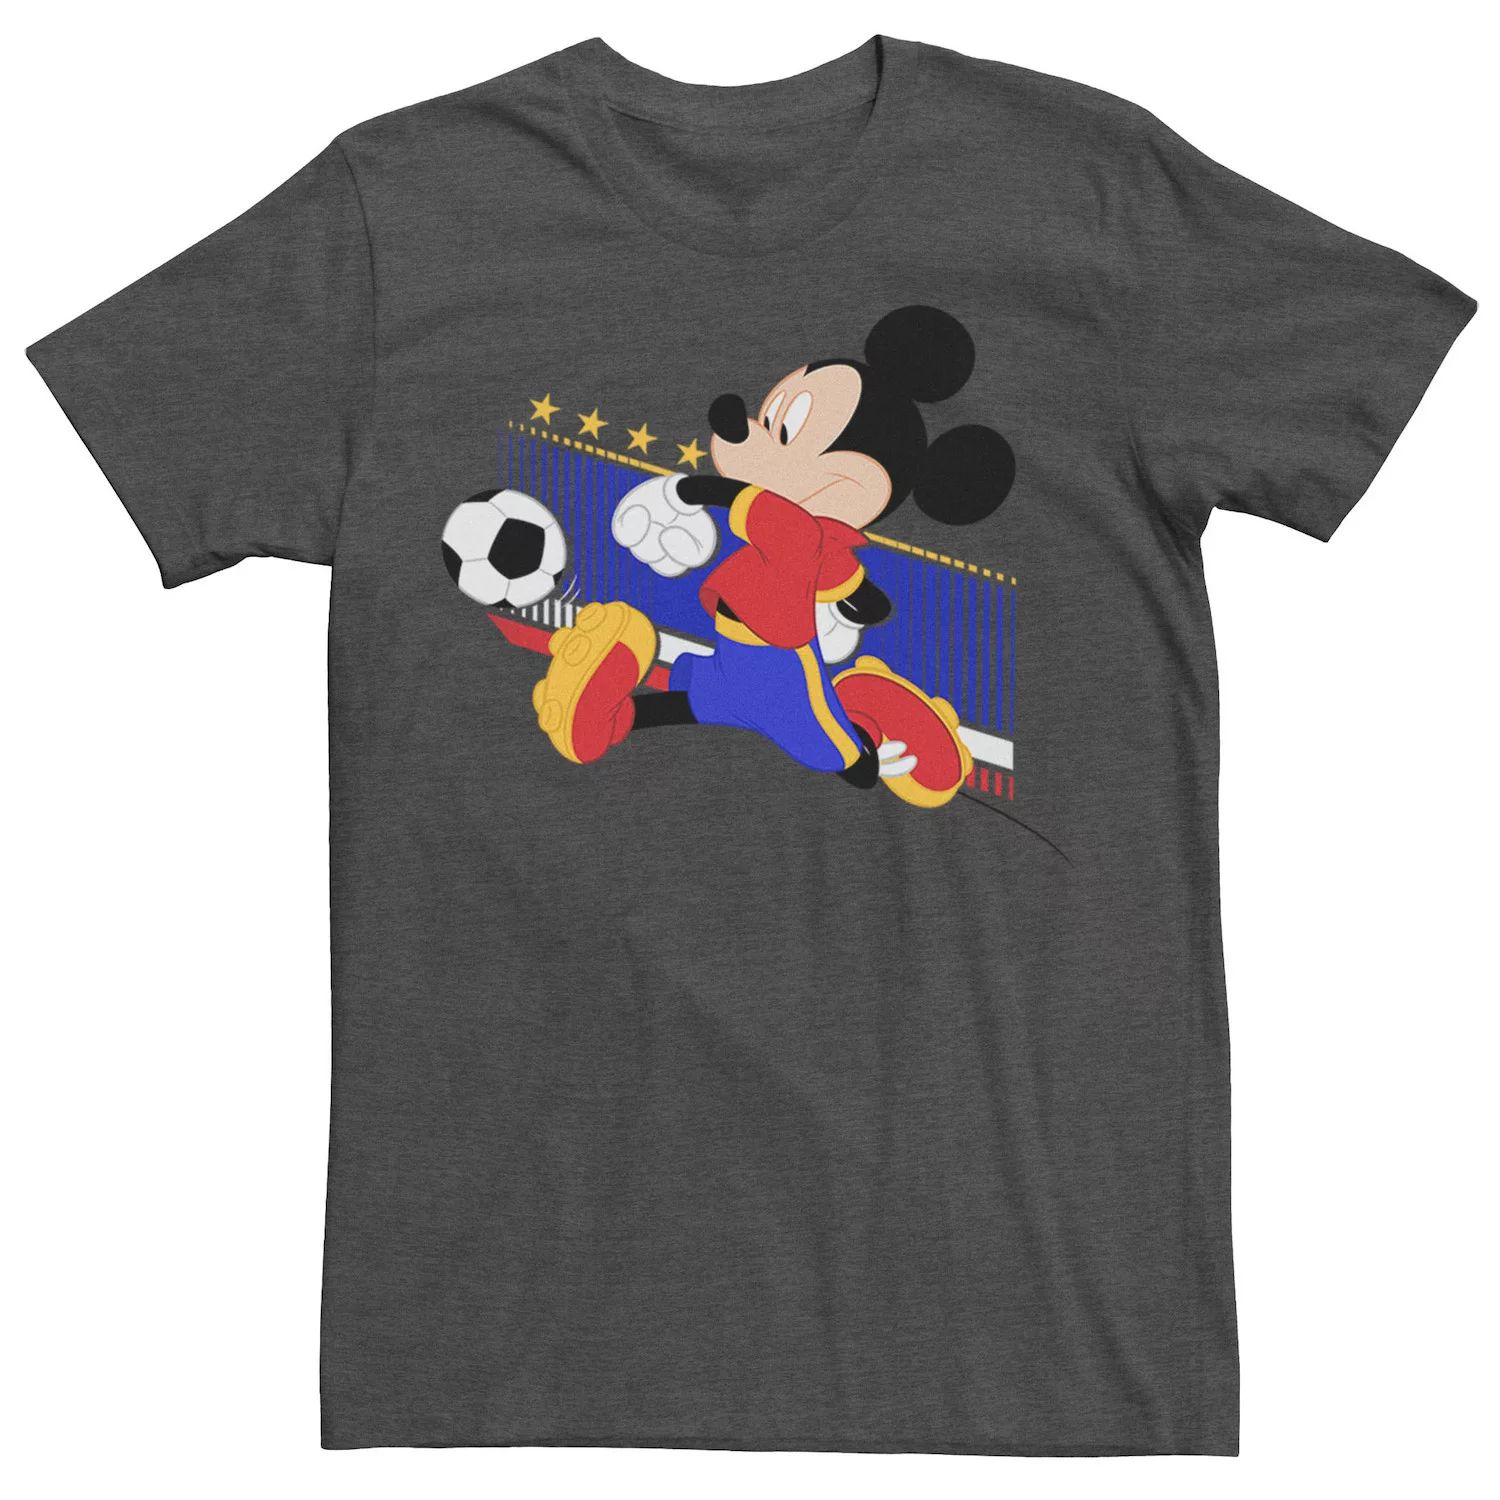 Мужская футболка с портретом Микки Мауса в Испании, футбольная форма Disney мужская футболка с изображением микки мауса бразильская футбольная форма портретная футболка disney